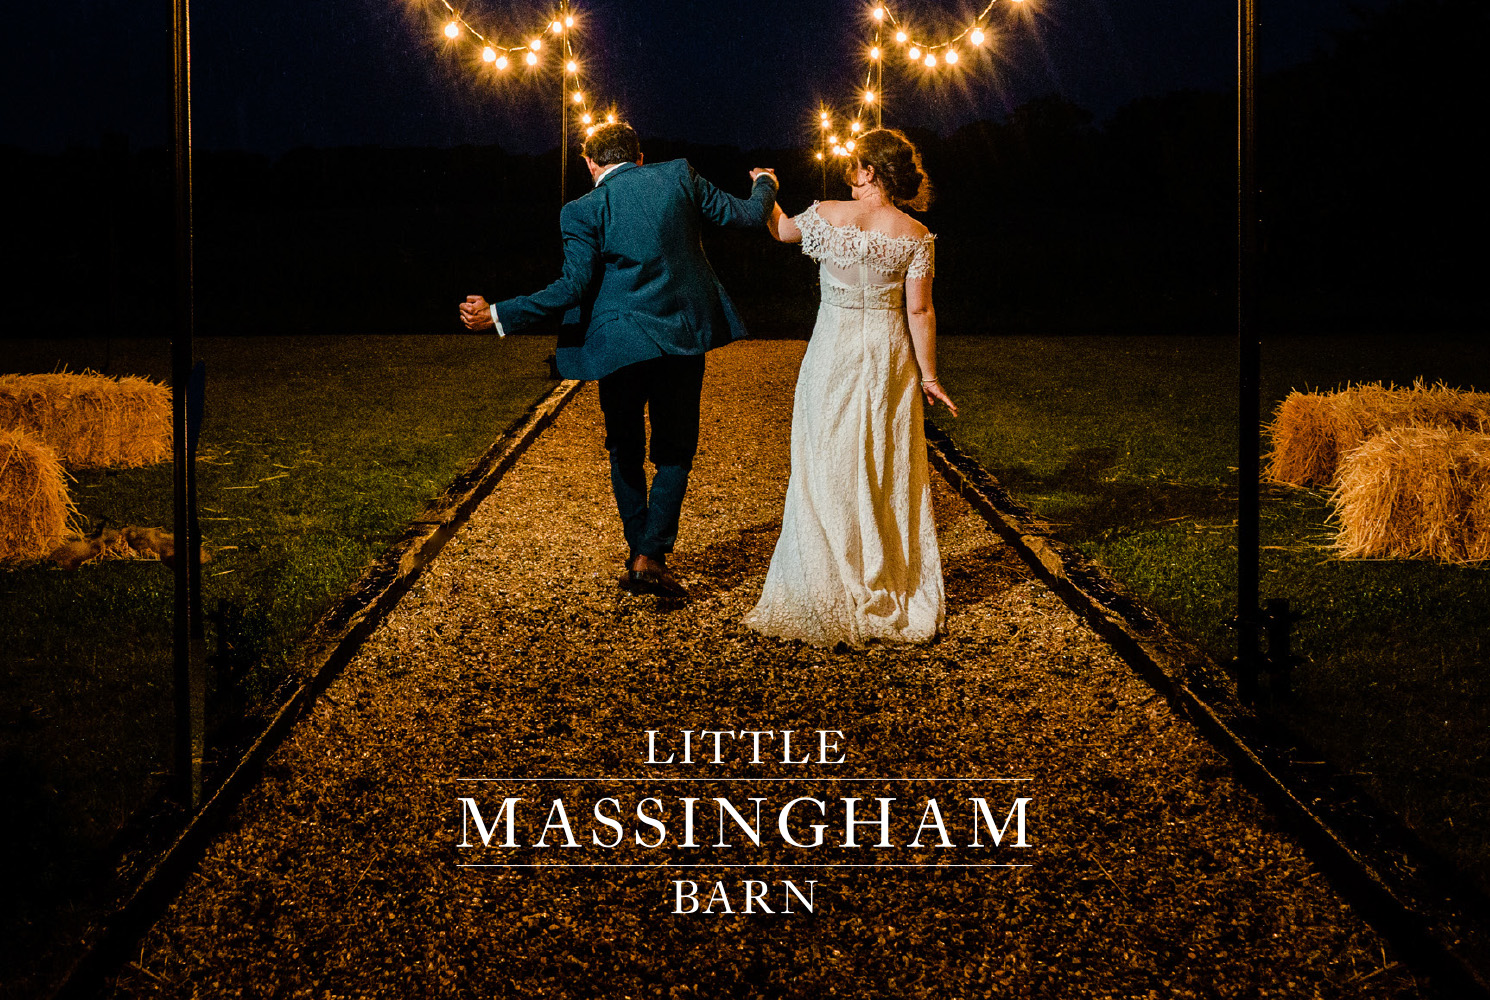 Little Massingham Barn logo shown on wedding picture